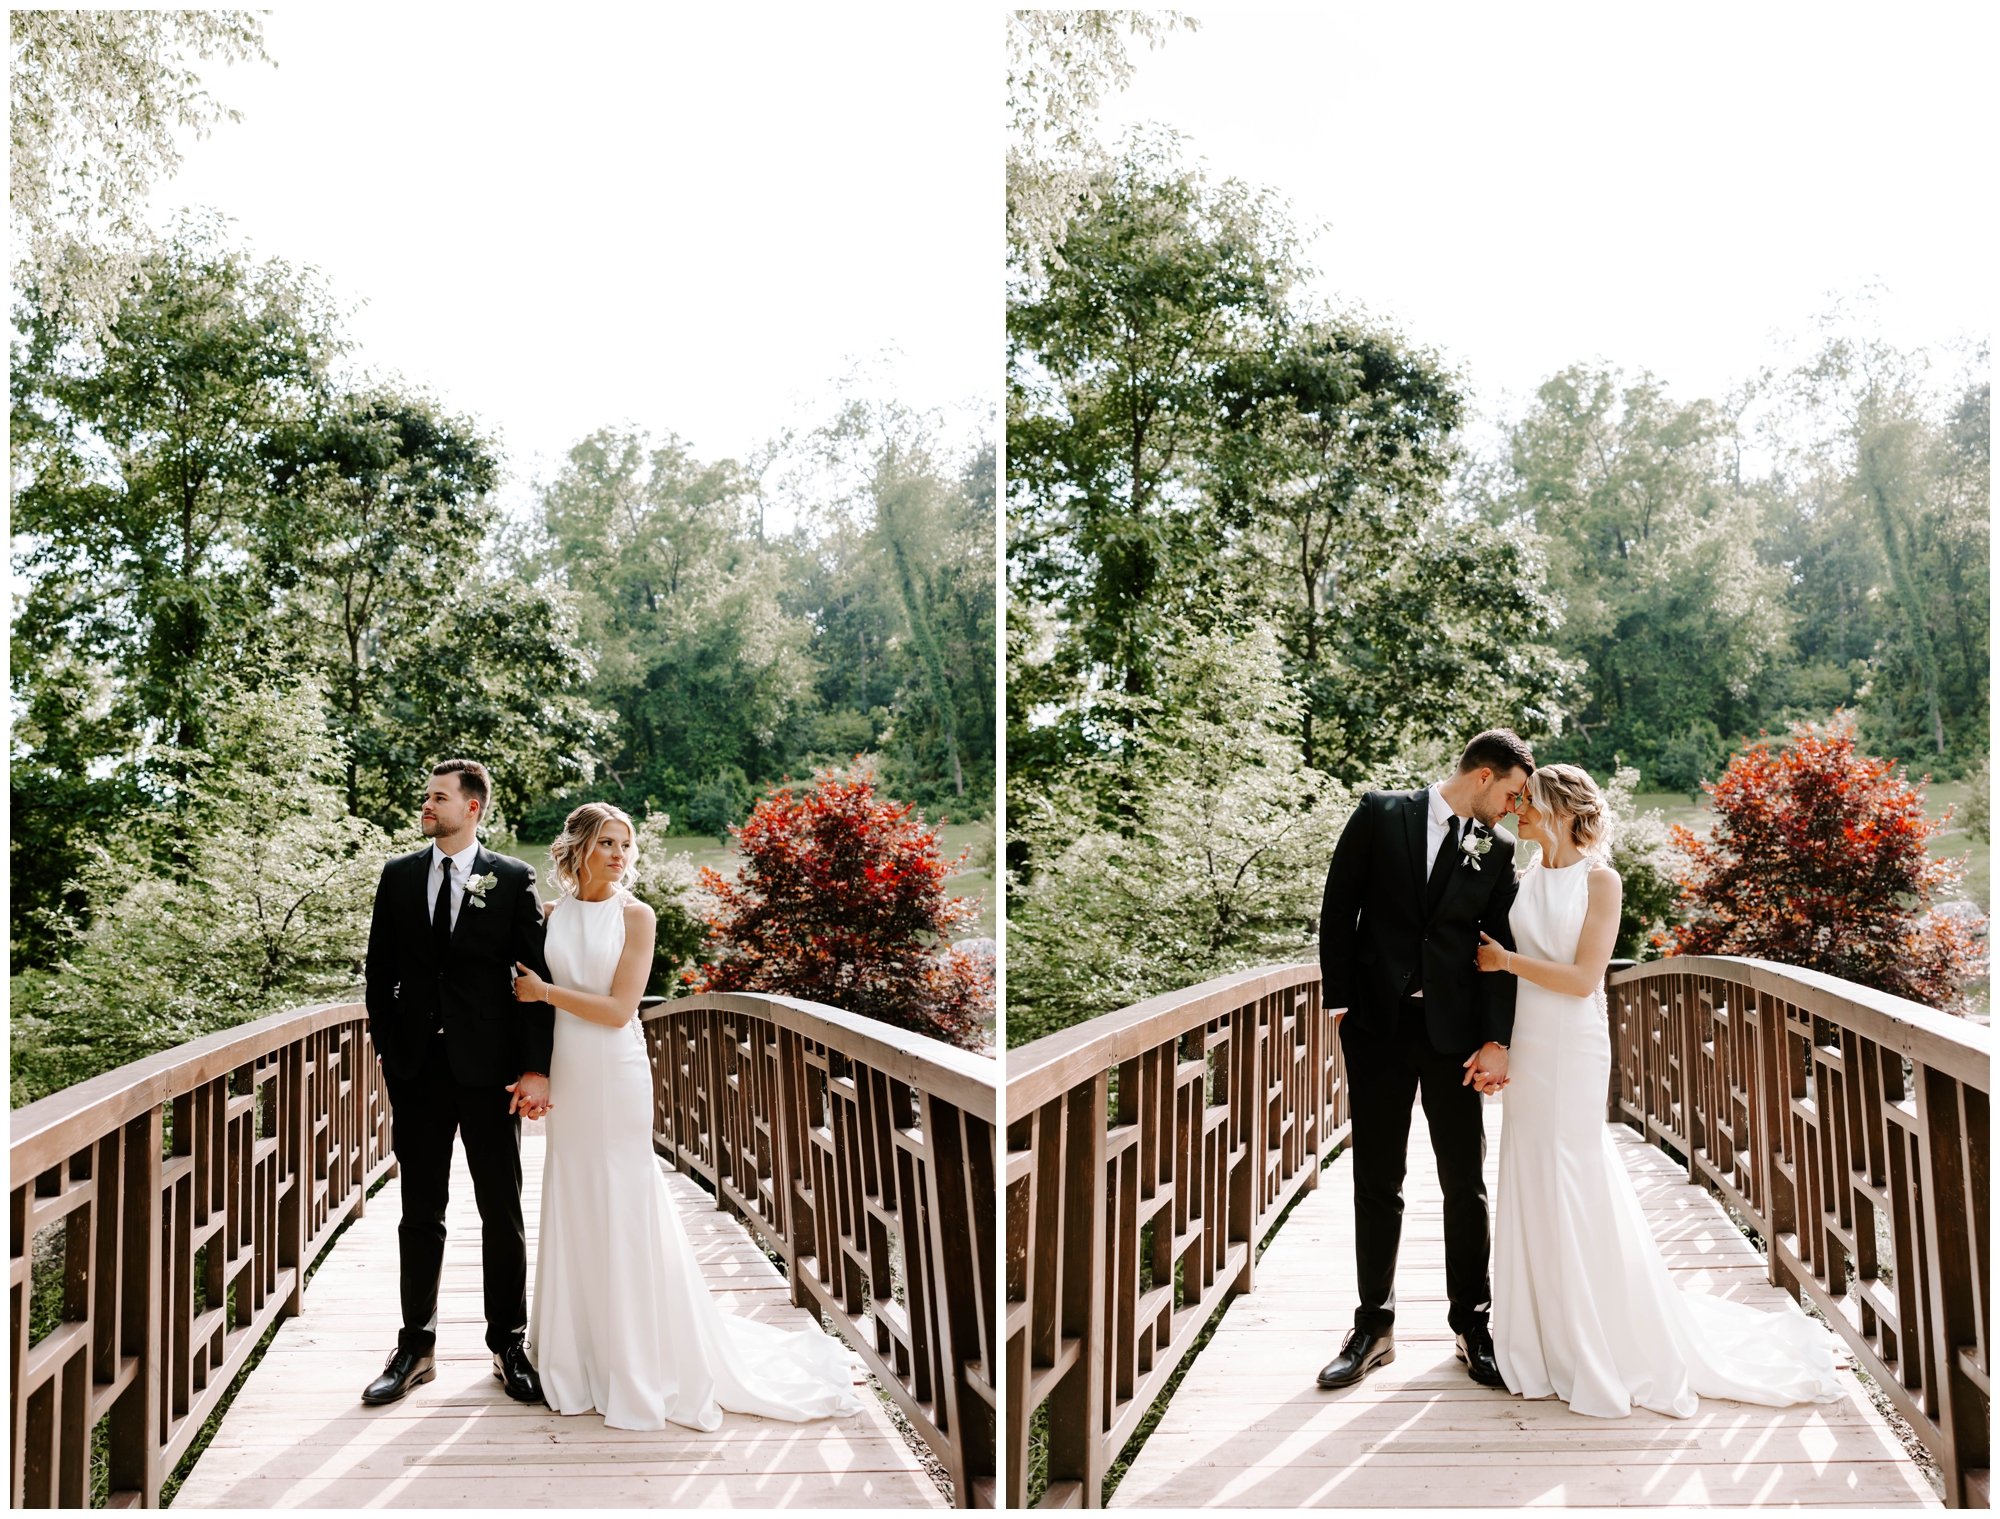 taking wedding pictures at Pittsburgh Botanic Garden